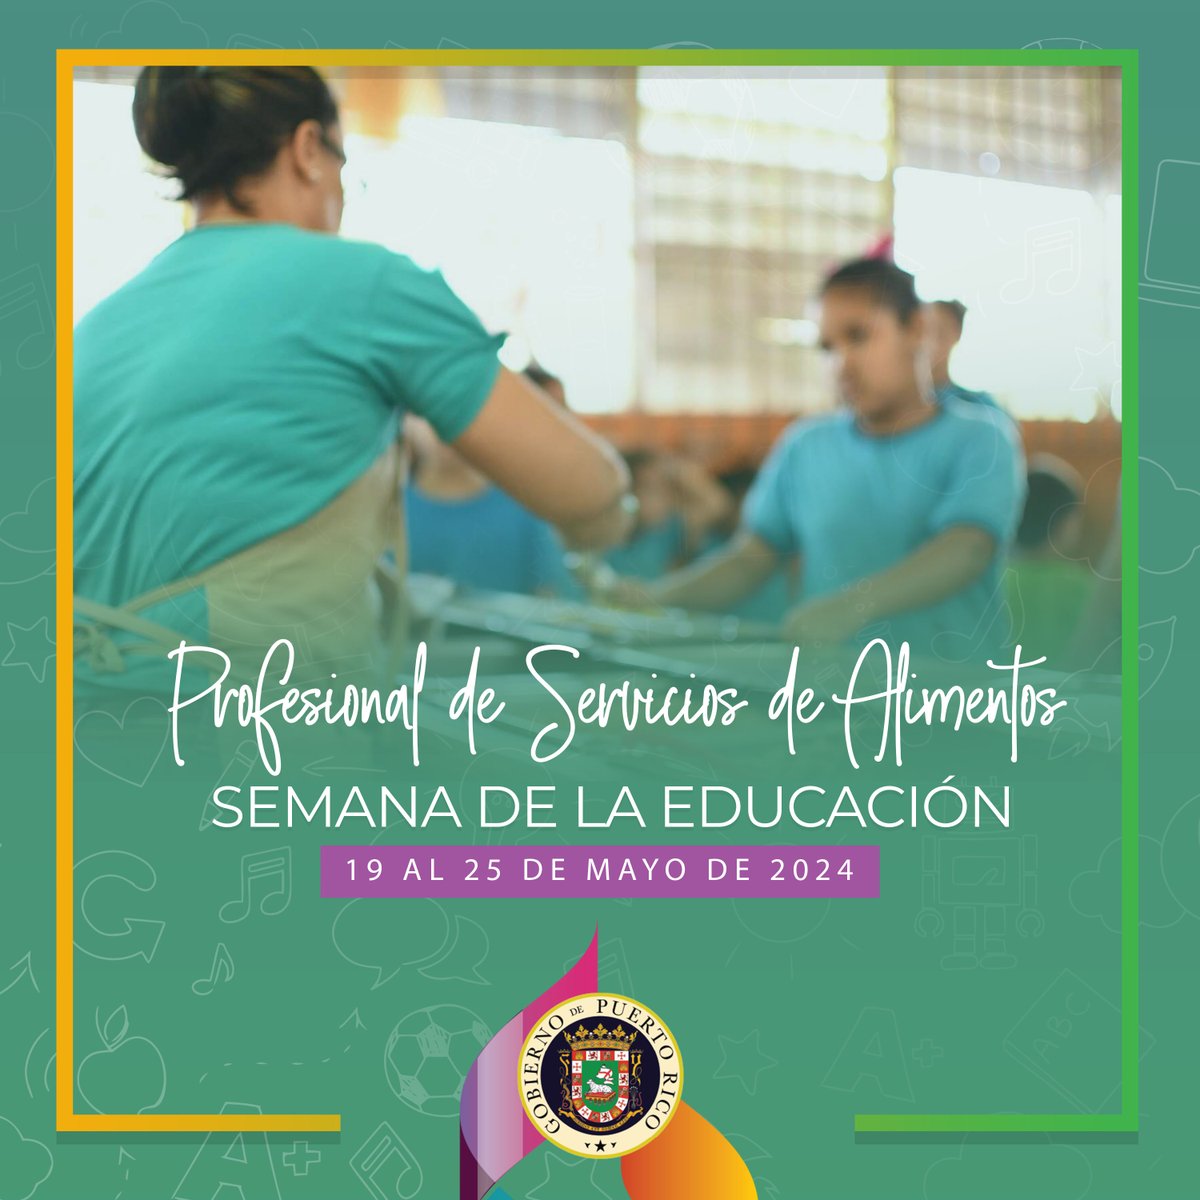 En esta Semana Educativa en Puerto Rico, continuamos la celebración reconociendo a los Profesionales de Servicios de Alimentos que cuidan la nutrición y el bienestar de nuestros estudiantes. Su trabajo diario es vital para el éxito de la comunidad escolar. ¡Les honramos y